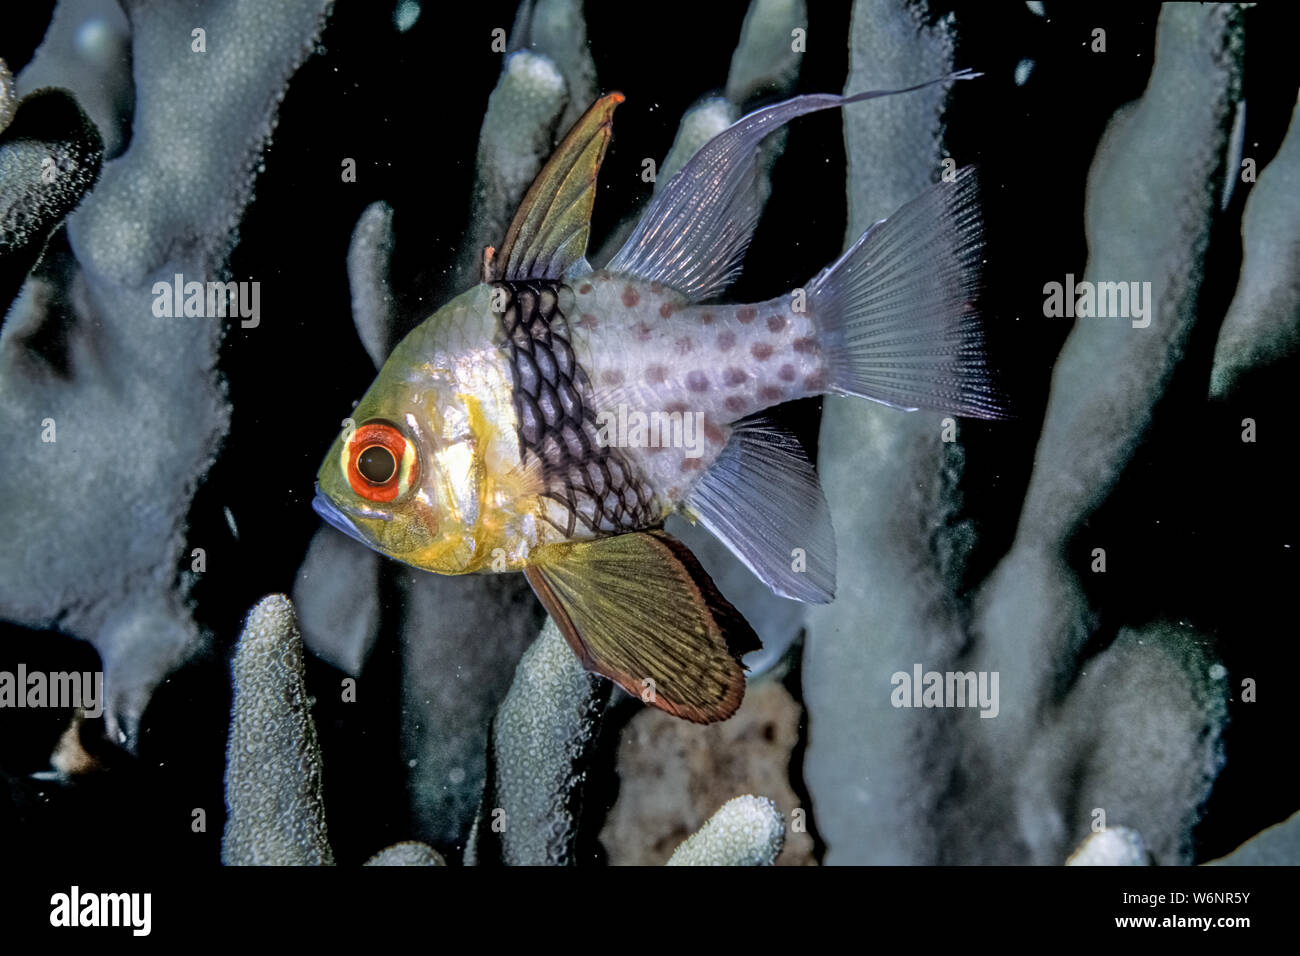 Micronesia Yap Island orbiculate cardinalfish (Apogon orbicularis) Stock Photo